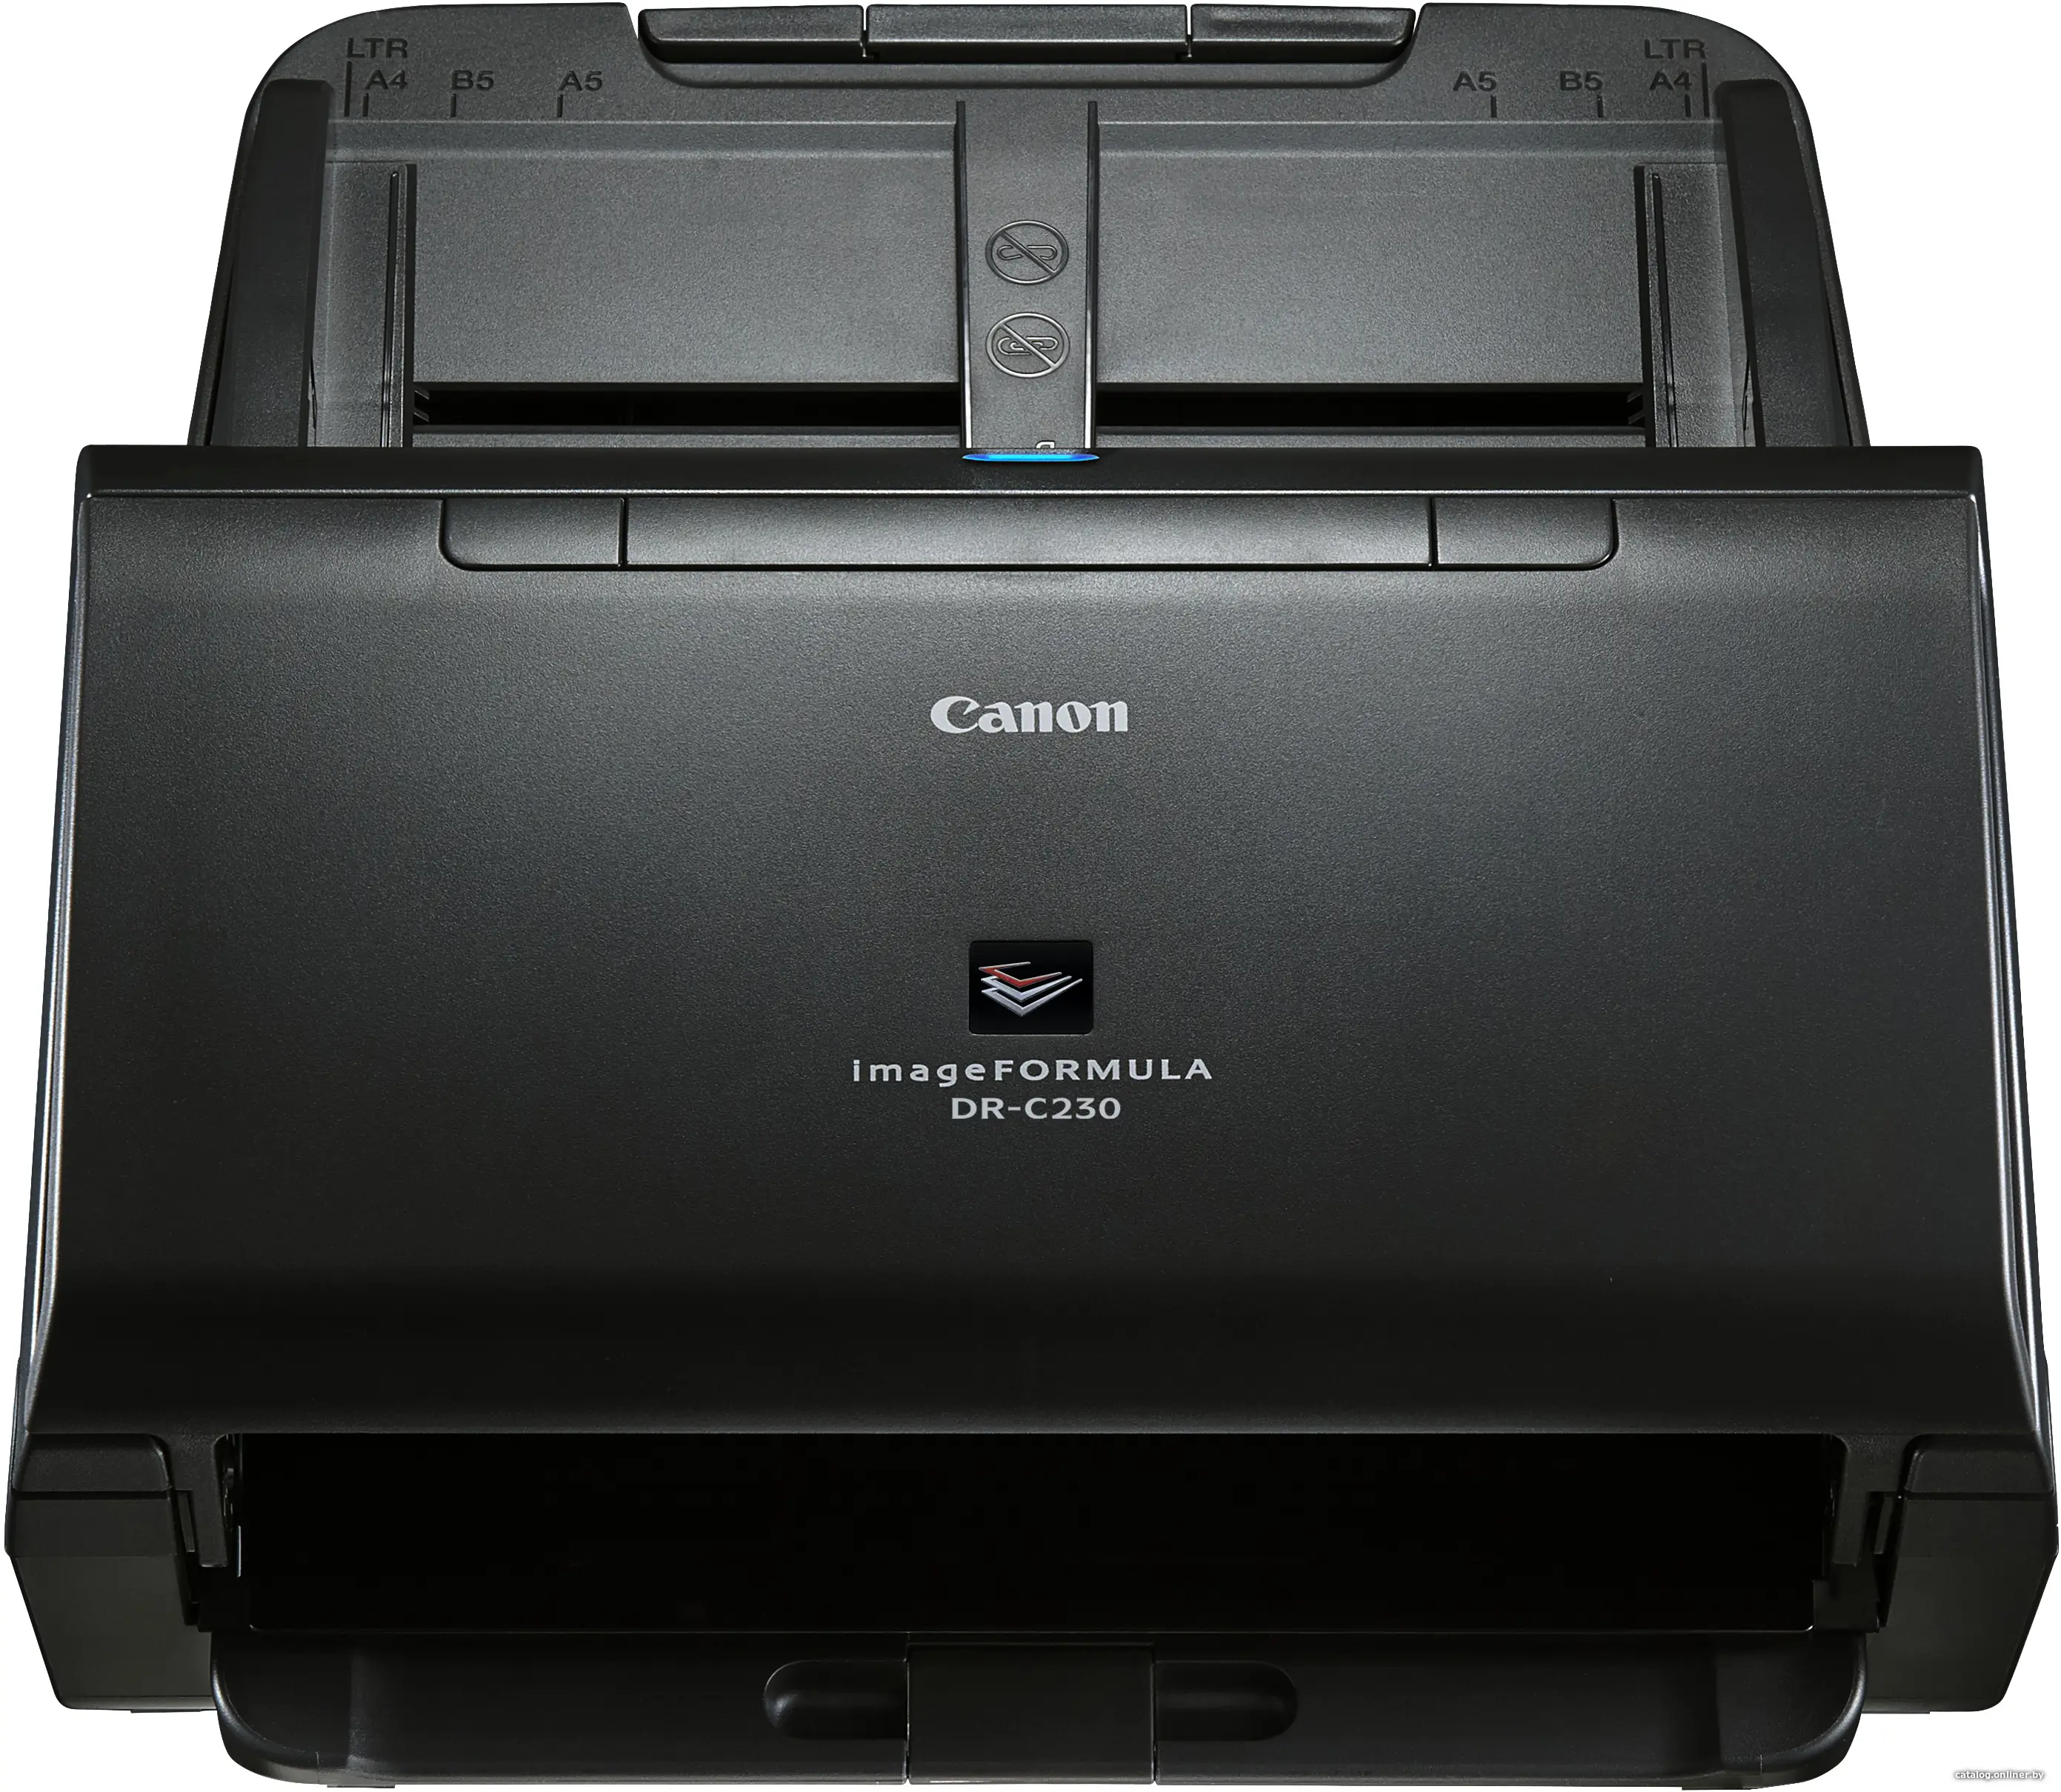 Купить Сканер Canon DR-C230, цена, опт и розница